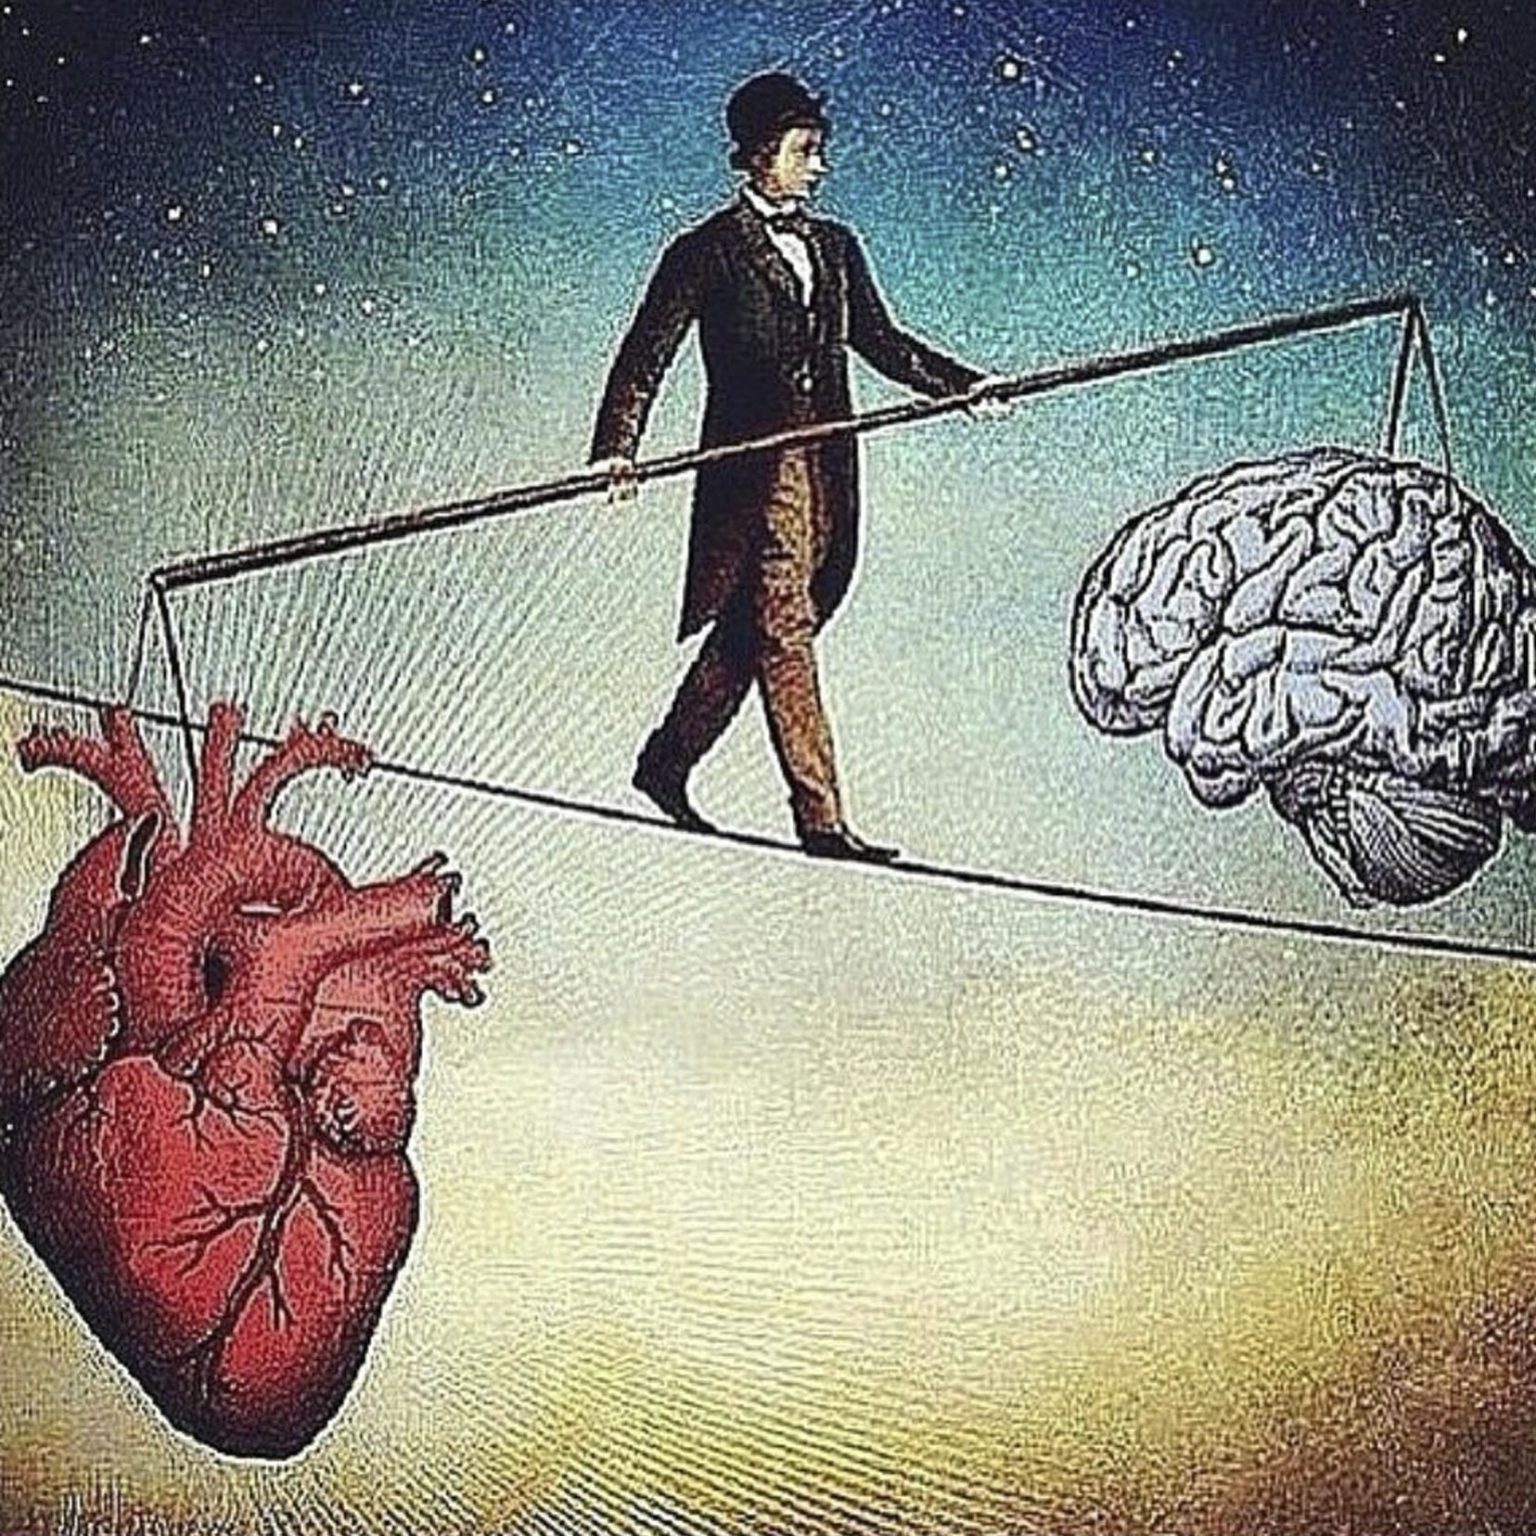 Переосмысление ценностей. Мозг и сердце. Ум и сердце. Борьба разума и чувств. Балансировать между разумом и сердцем.